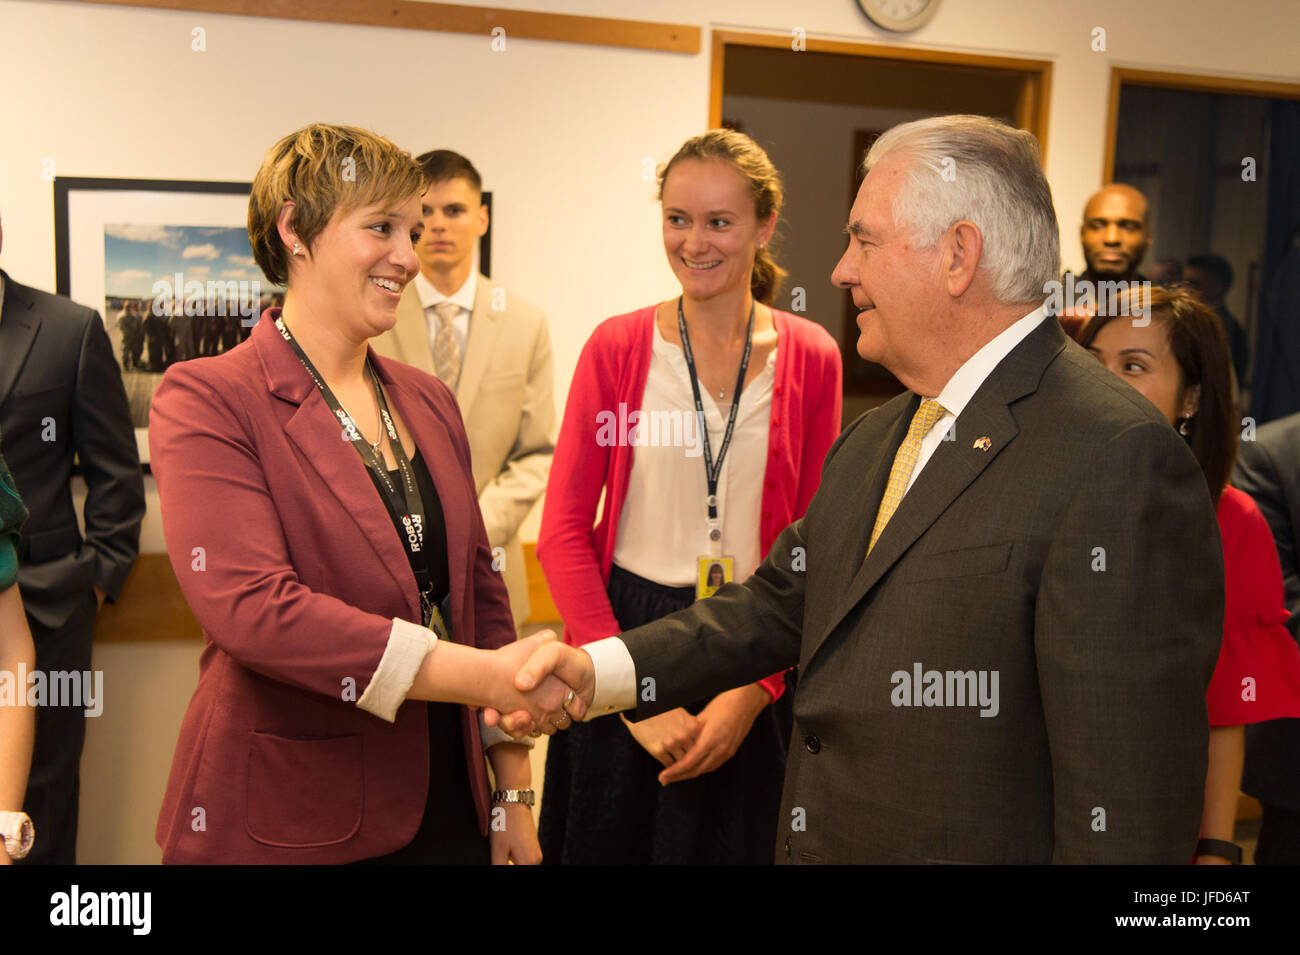 La secrétaire d'État des États-Unis, Rex Tillerson rencontre des collègues de l'ambassade des Etats-Unis dans la région de Wellington, Nouvelle-Zélande, le 6 juin 2017. Banque D'Images